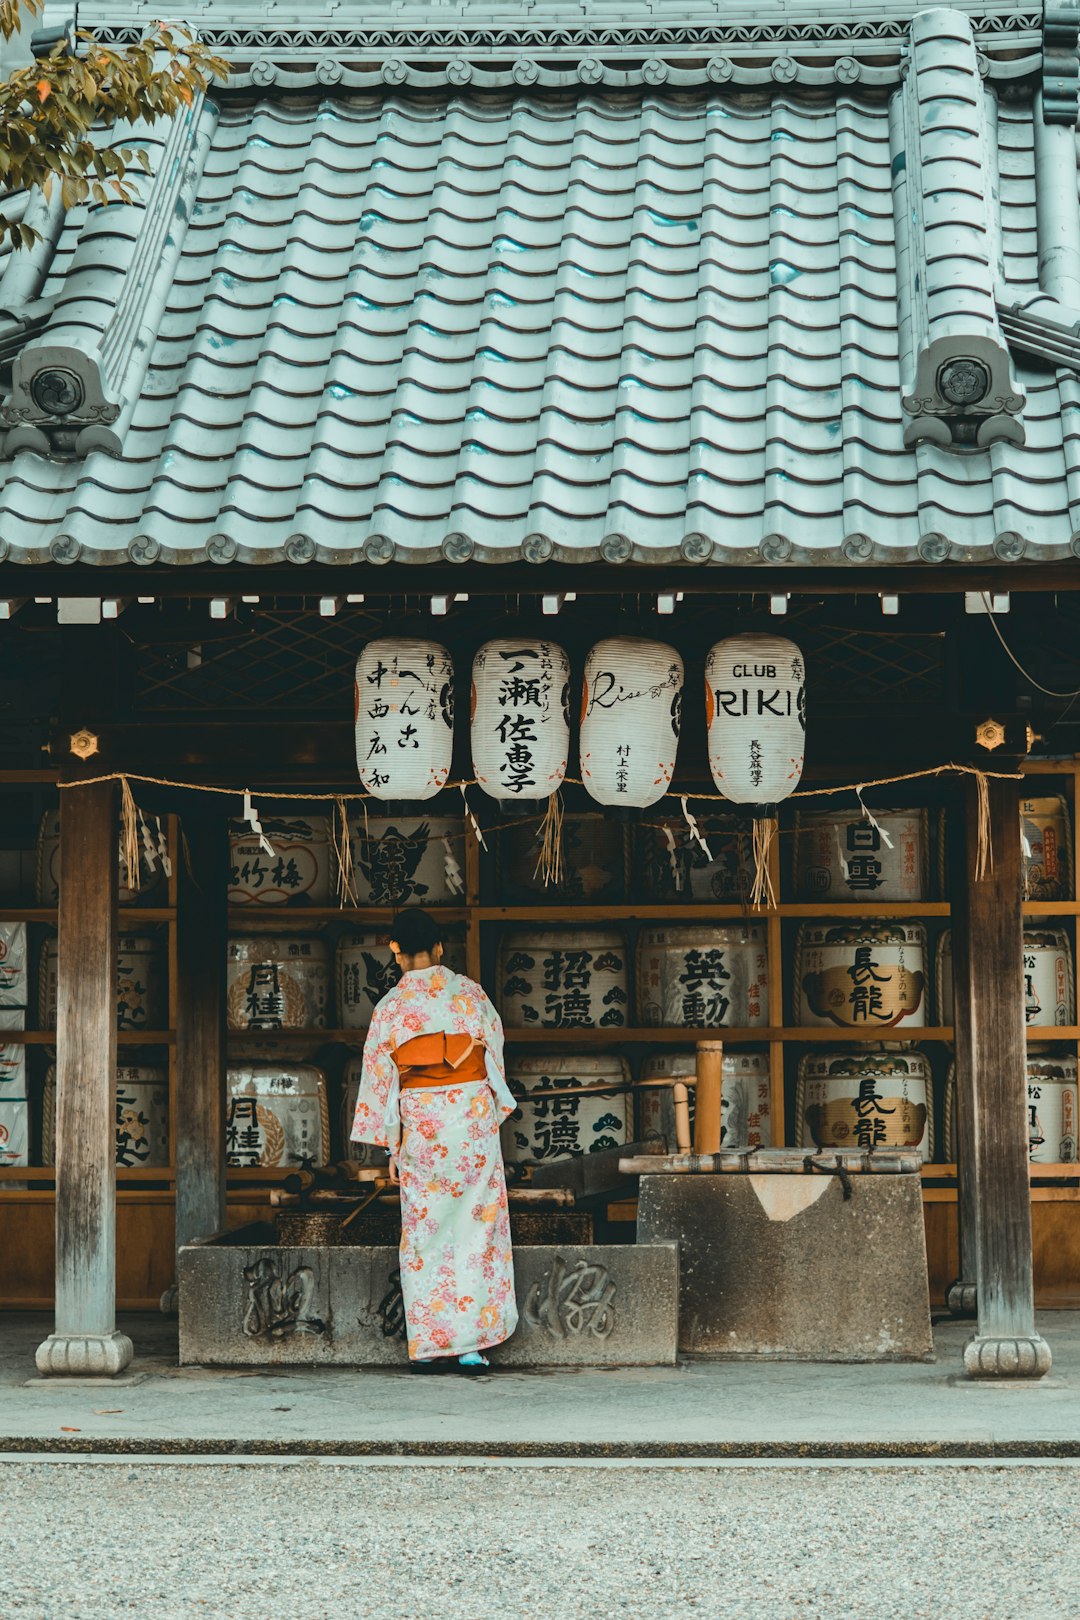 Town photo spot Fushimi Inari Taisha Ichiran Dotombori honkan